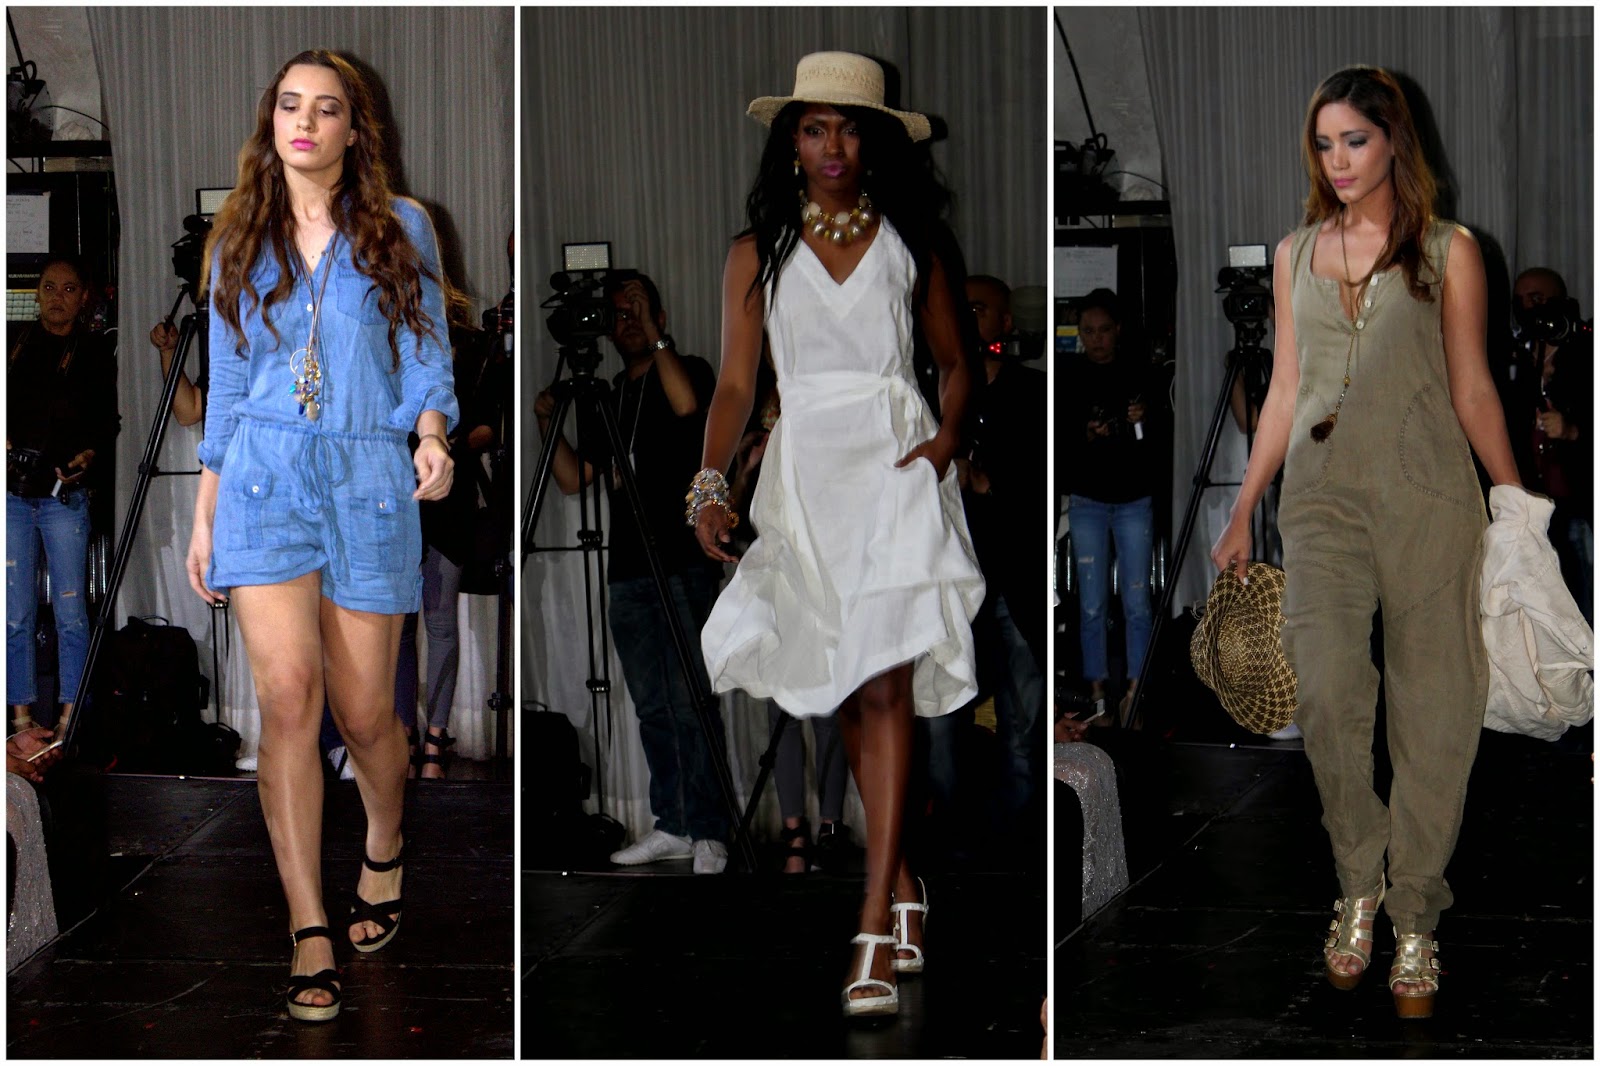 Latino Fashion Week Returns to Miami with ‘Decade of Elegance Tour’